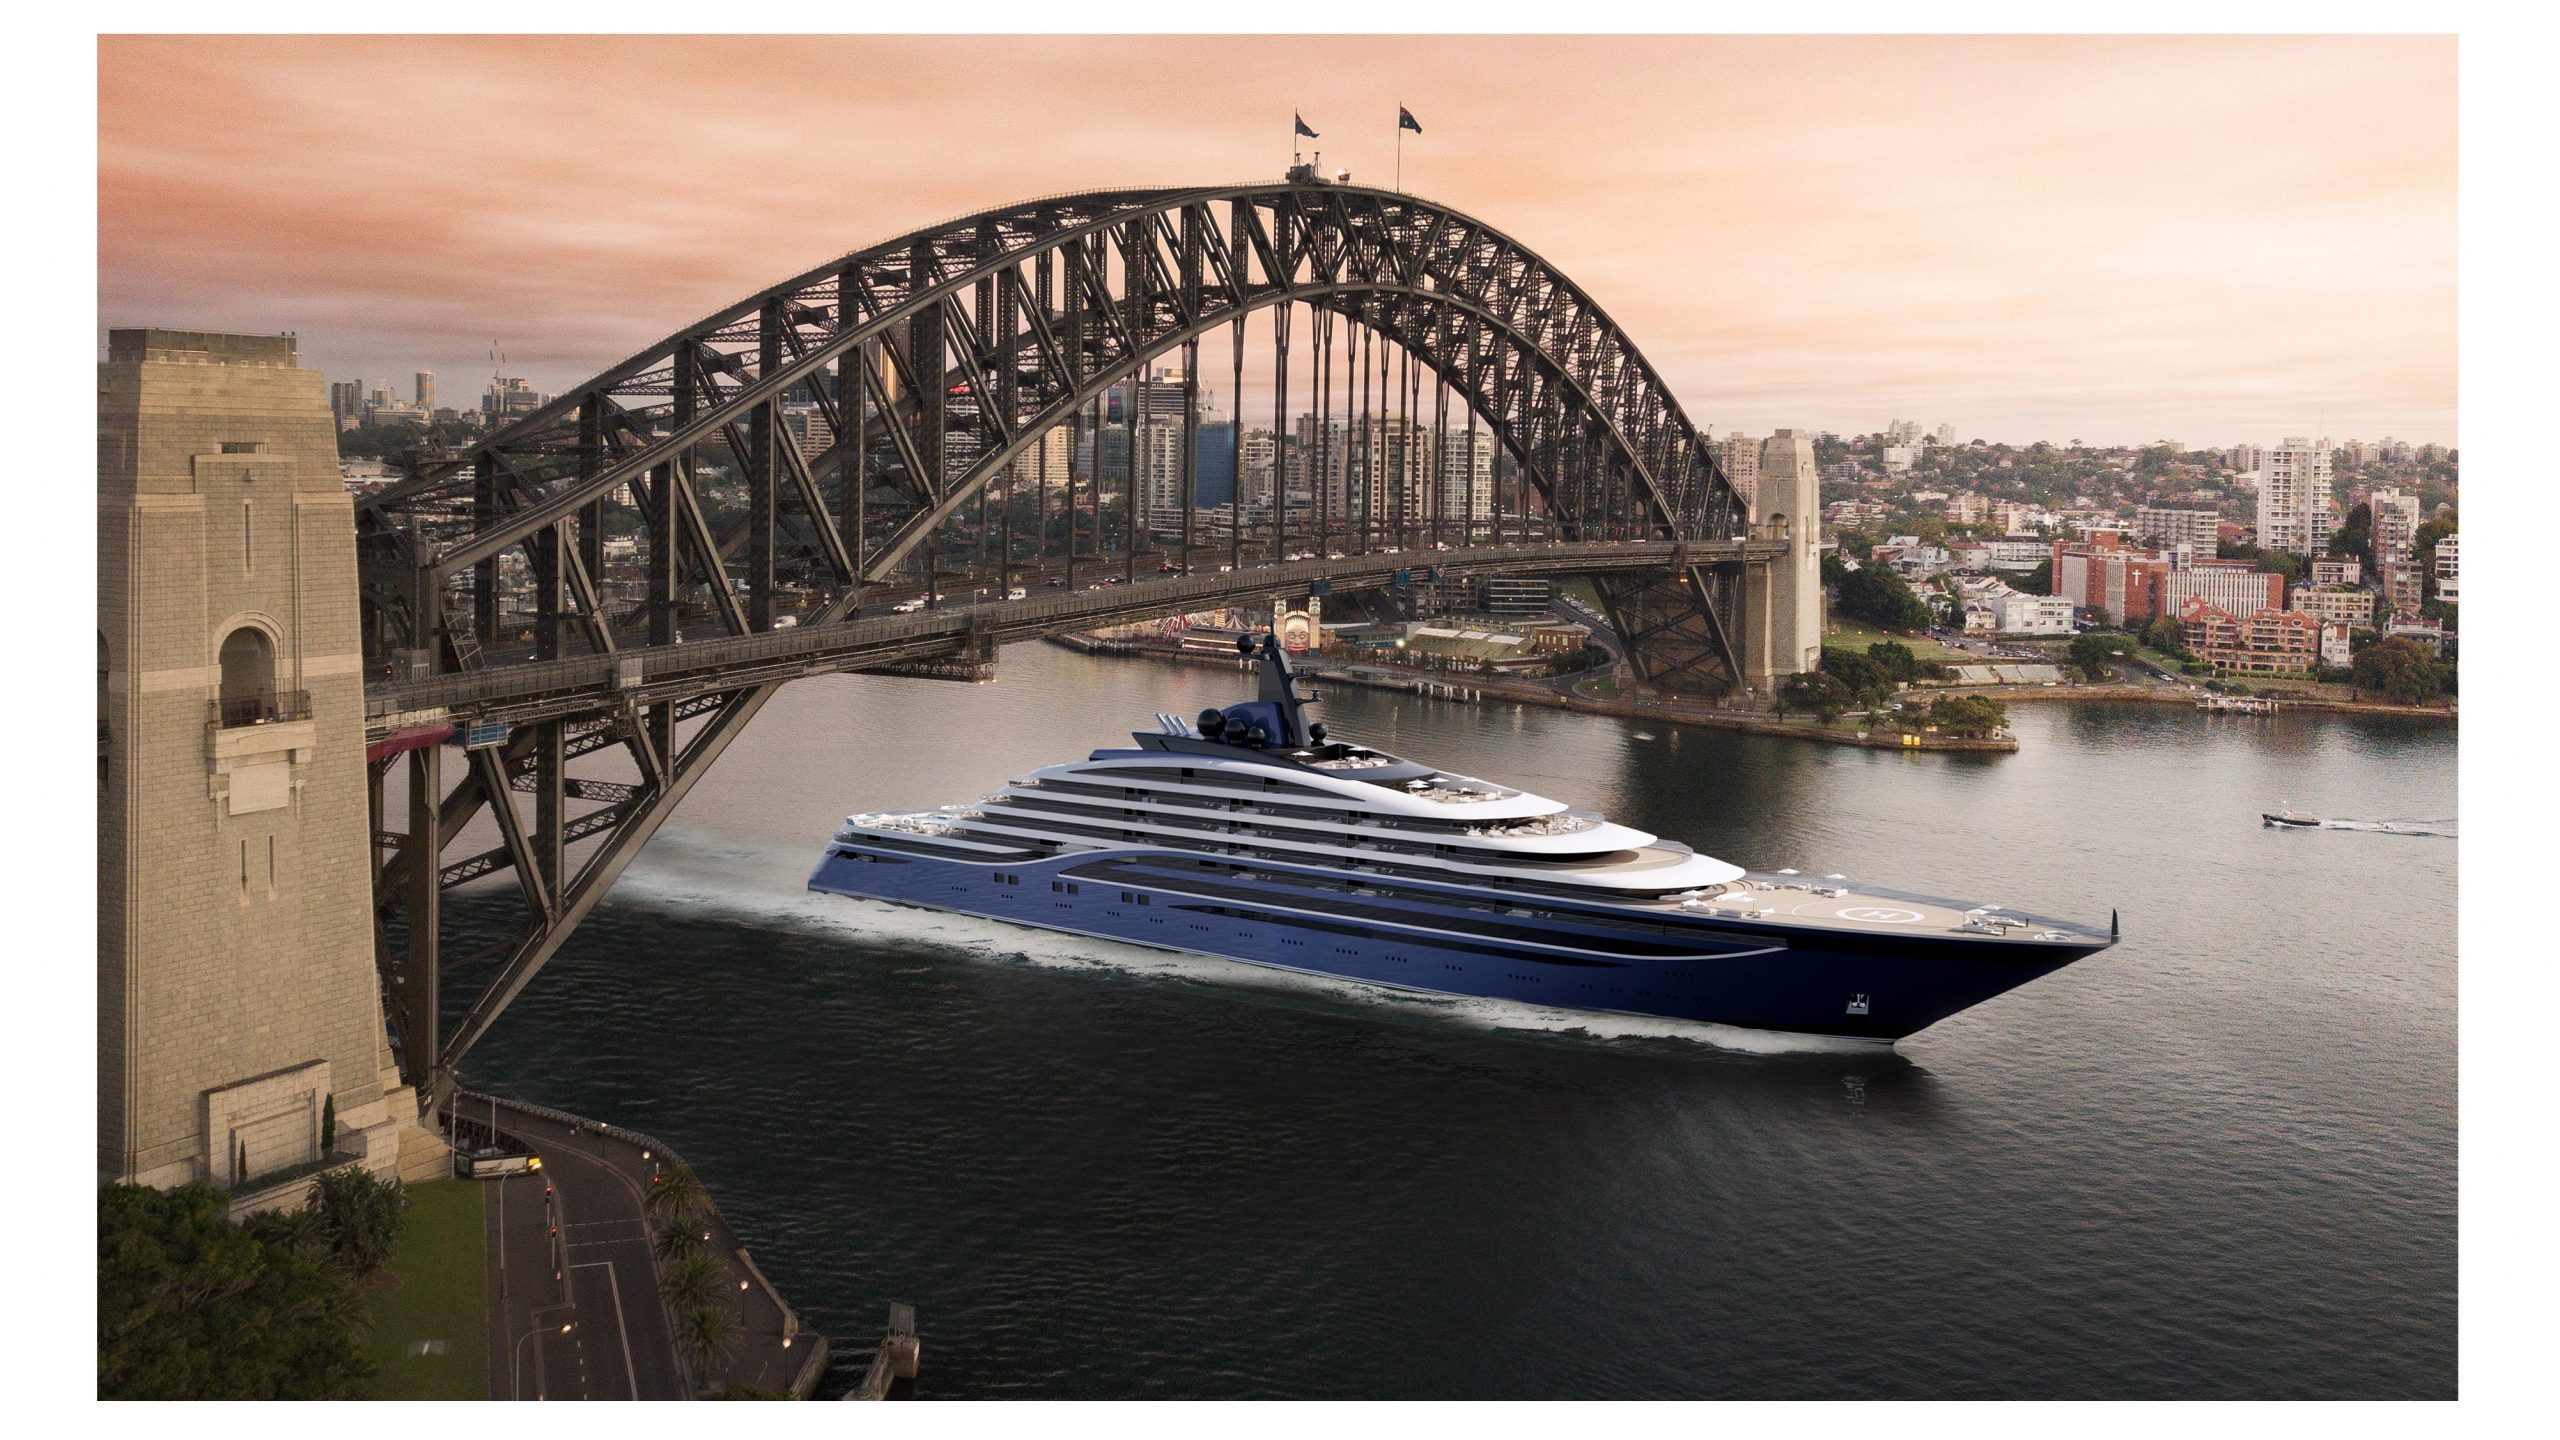 Somnio Superyacht going under Sydney Harbor Bridge